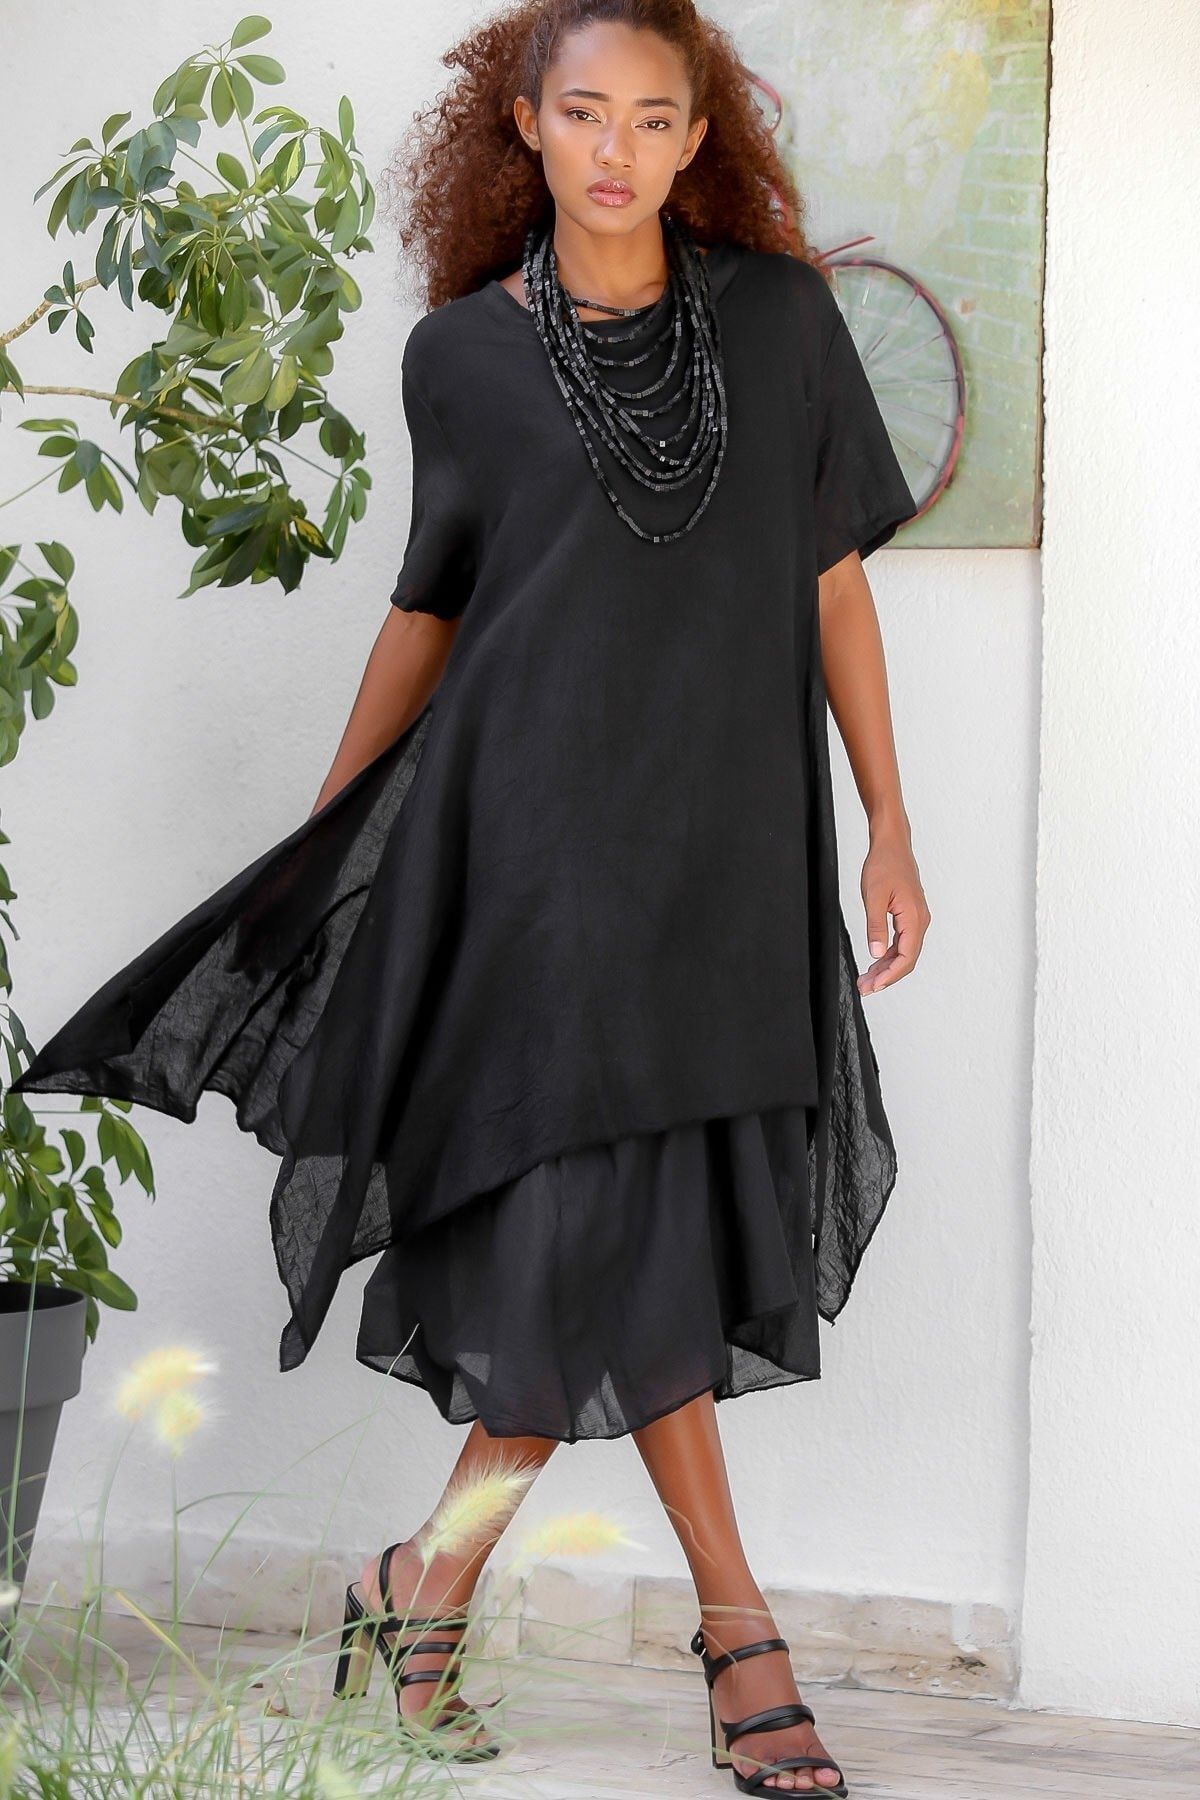 Chiccy Kadın Siyah Italyan Ikili Asimetrik Oversize Dokuma Elbise M10160000el94538